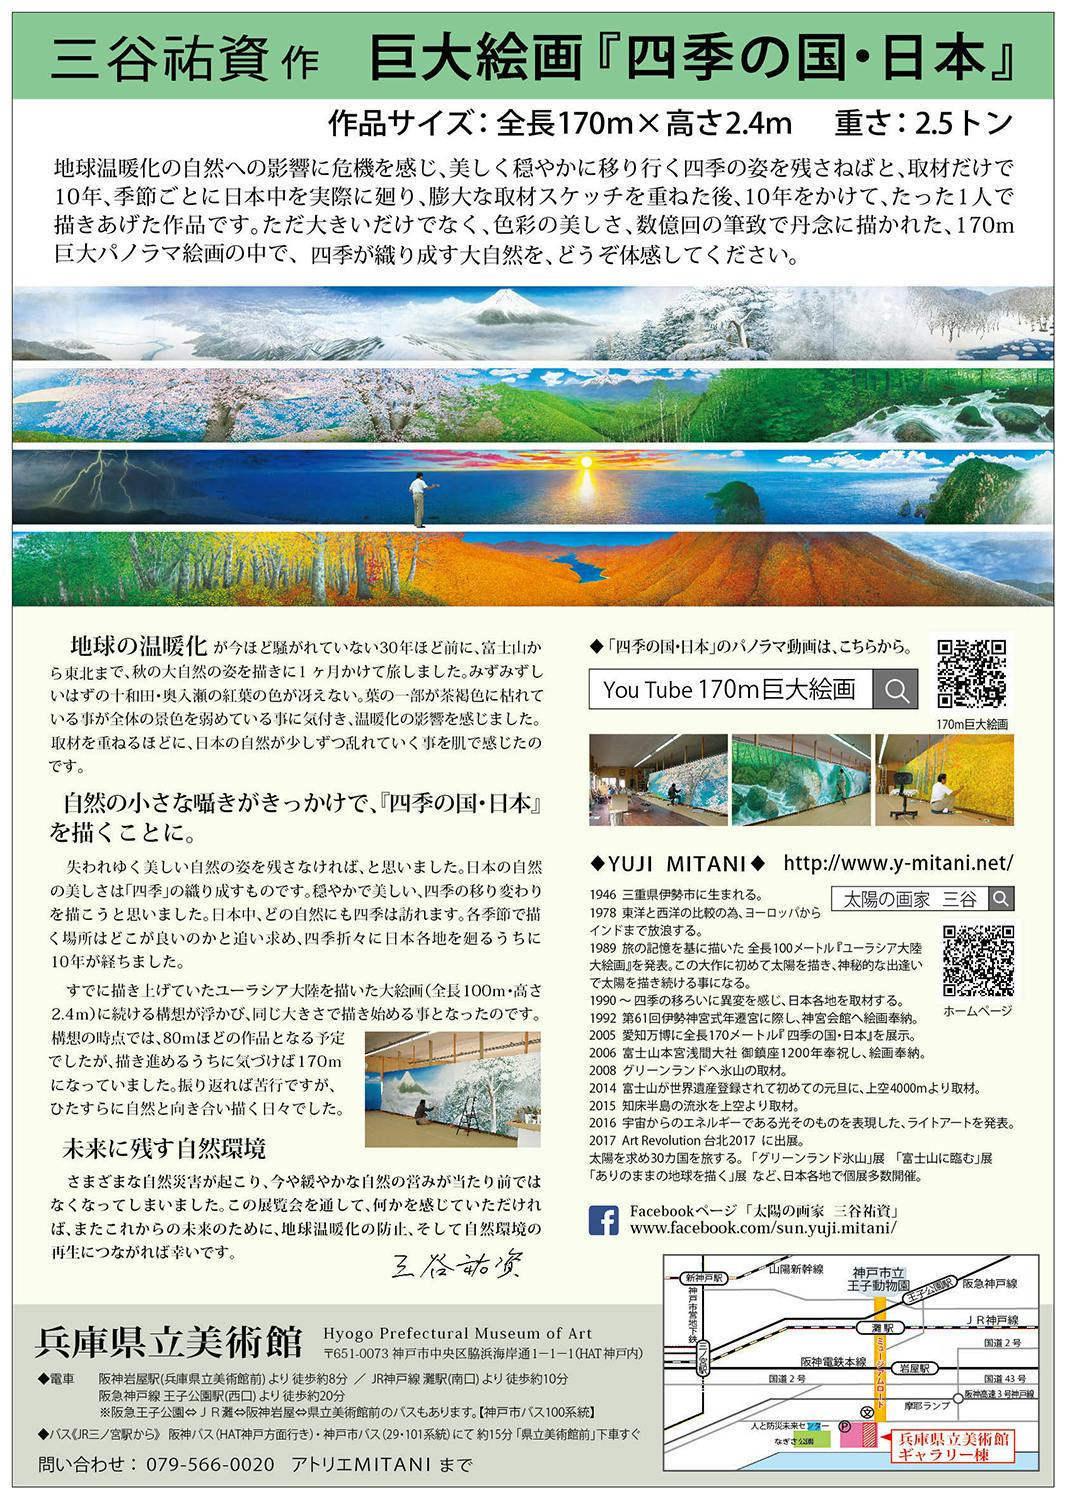 全長170ｍ】 巨大絵画の展覧会「四季の国・日本」展を開催します